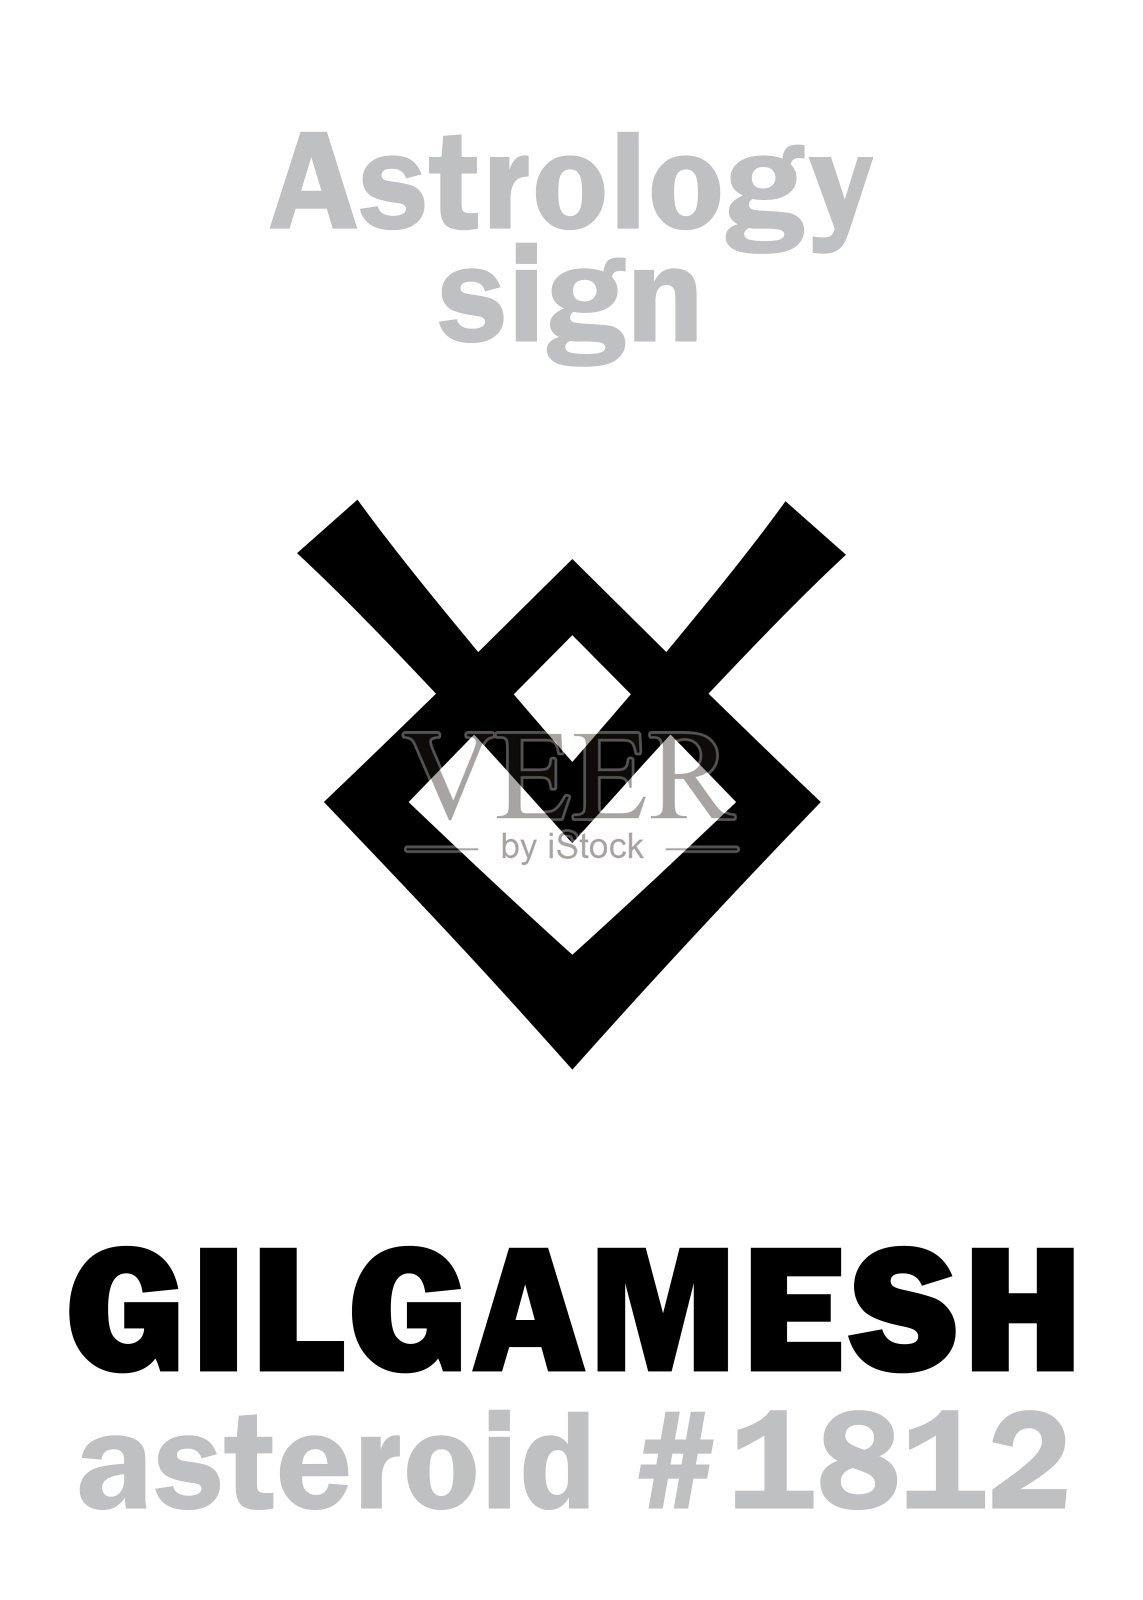 占星字母表:吉尔伽美什，小行星#1812。象形文字符号(单符号)。插画图片素材